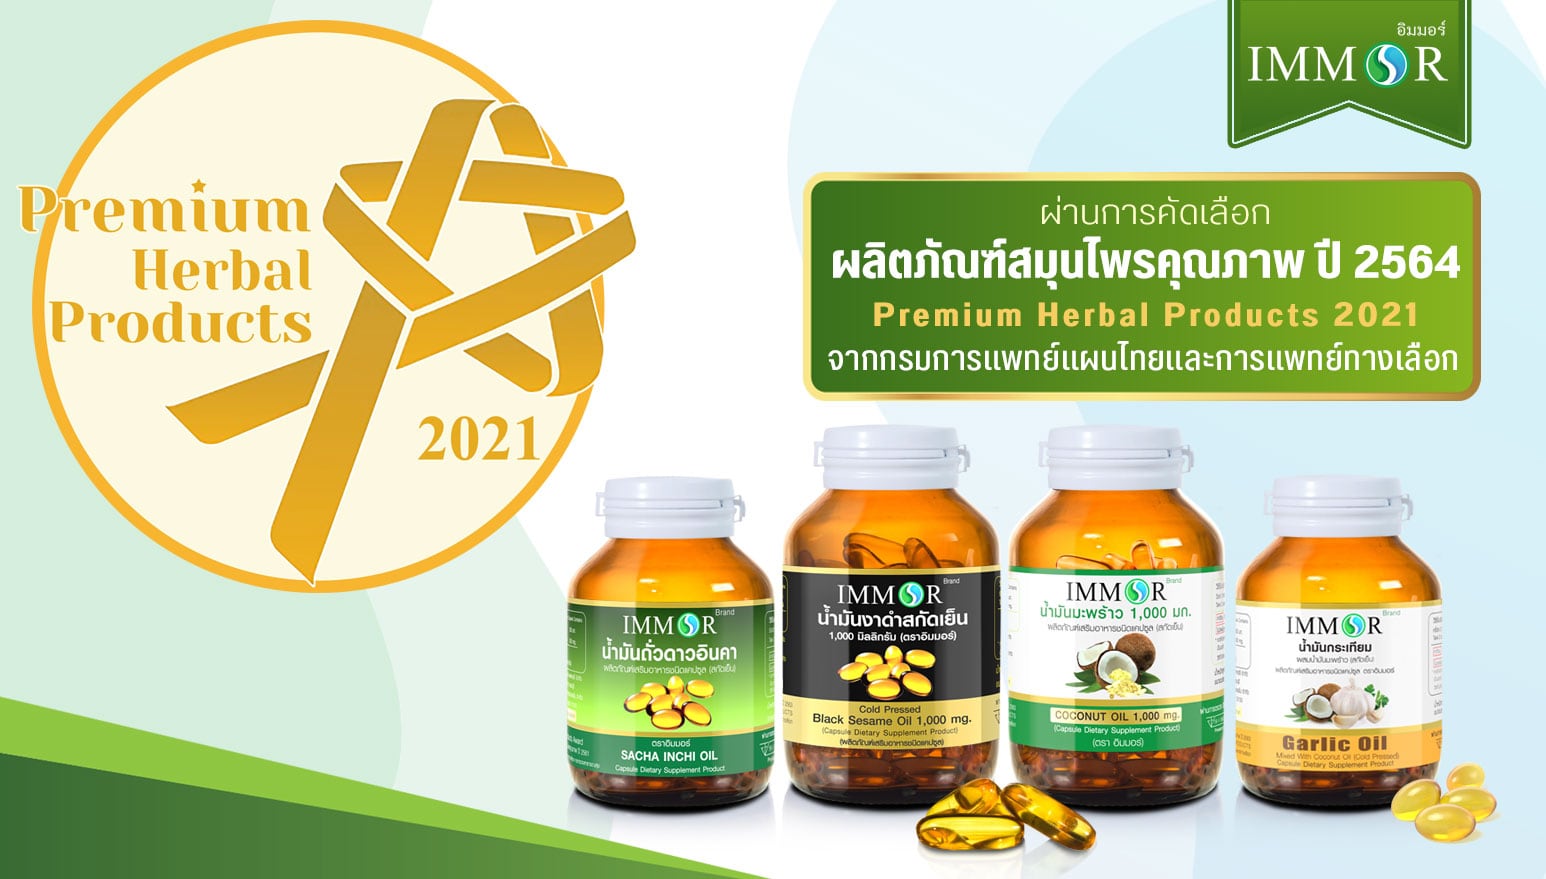 IMMOR_ผลิตภัณฑ์สมุนไพรคุณภาพจากกรมการแพทย์แผนไทย2564